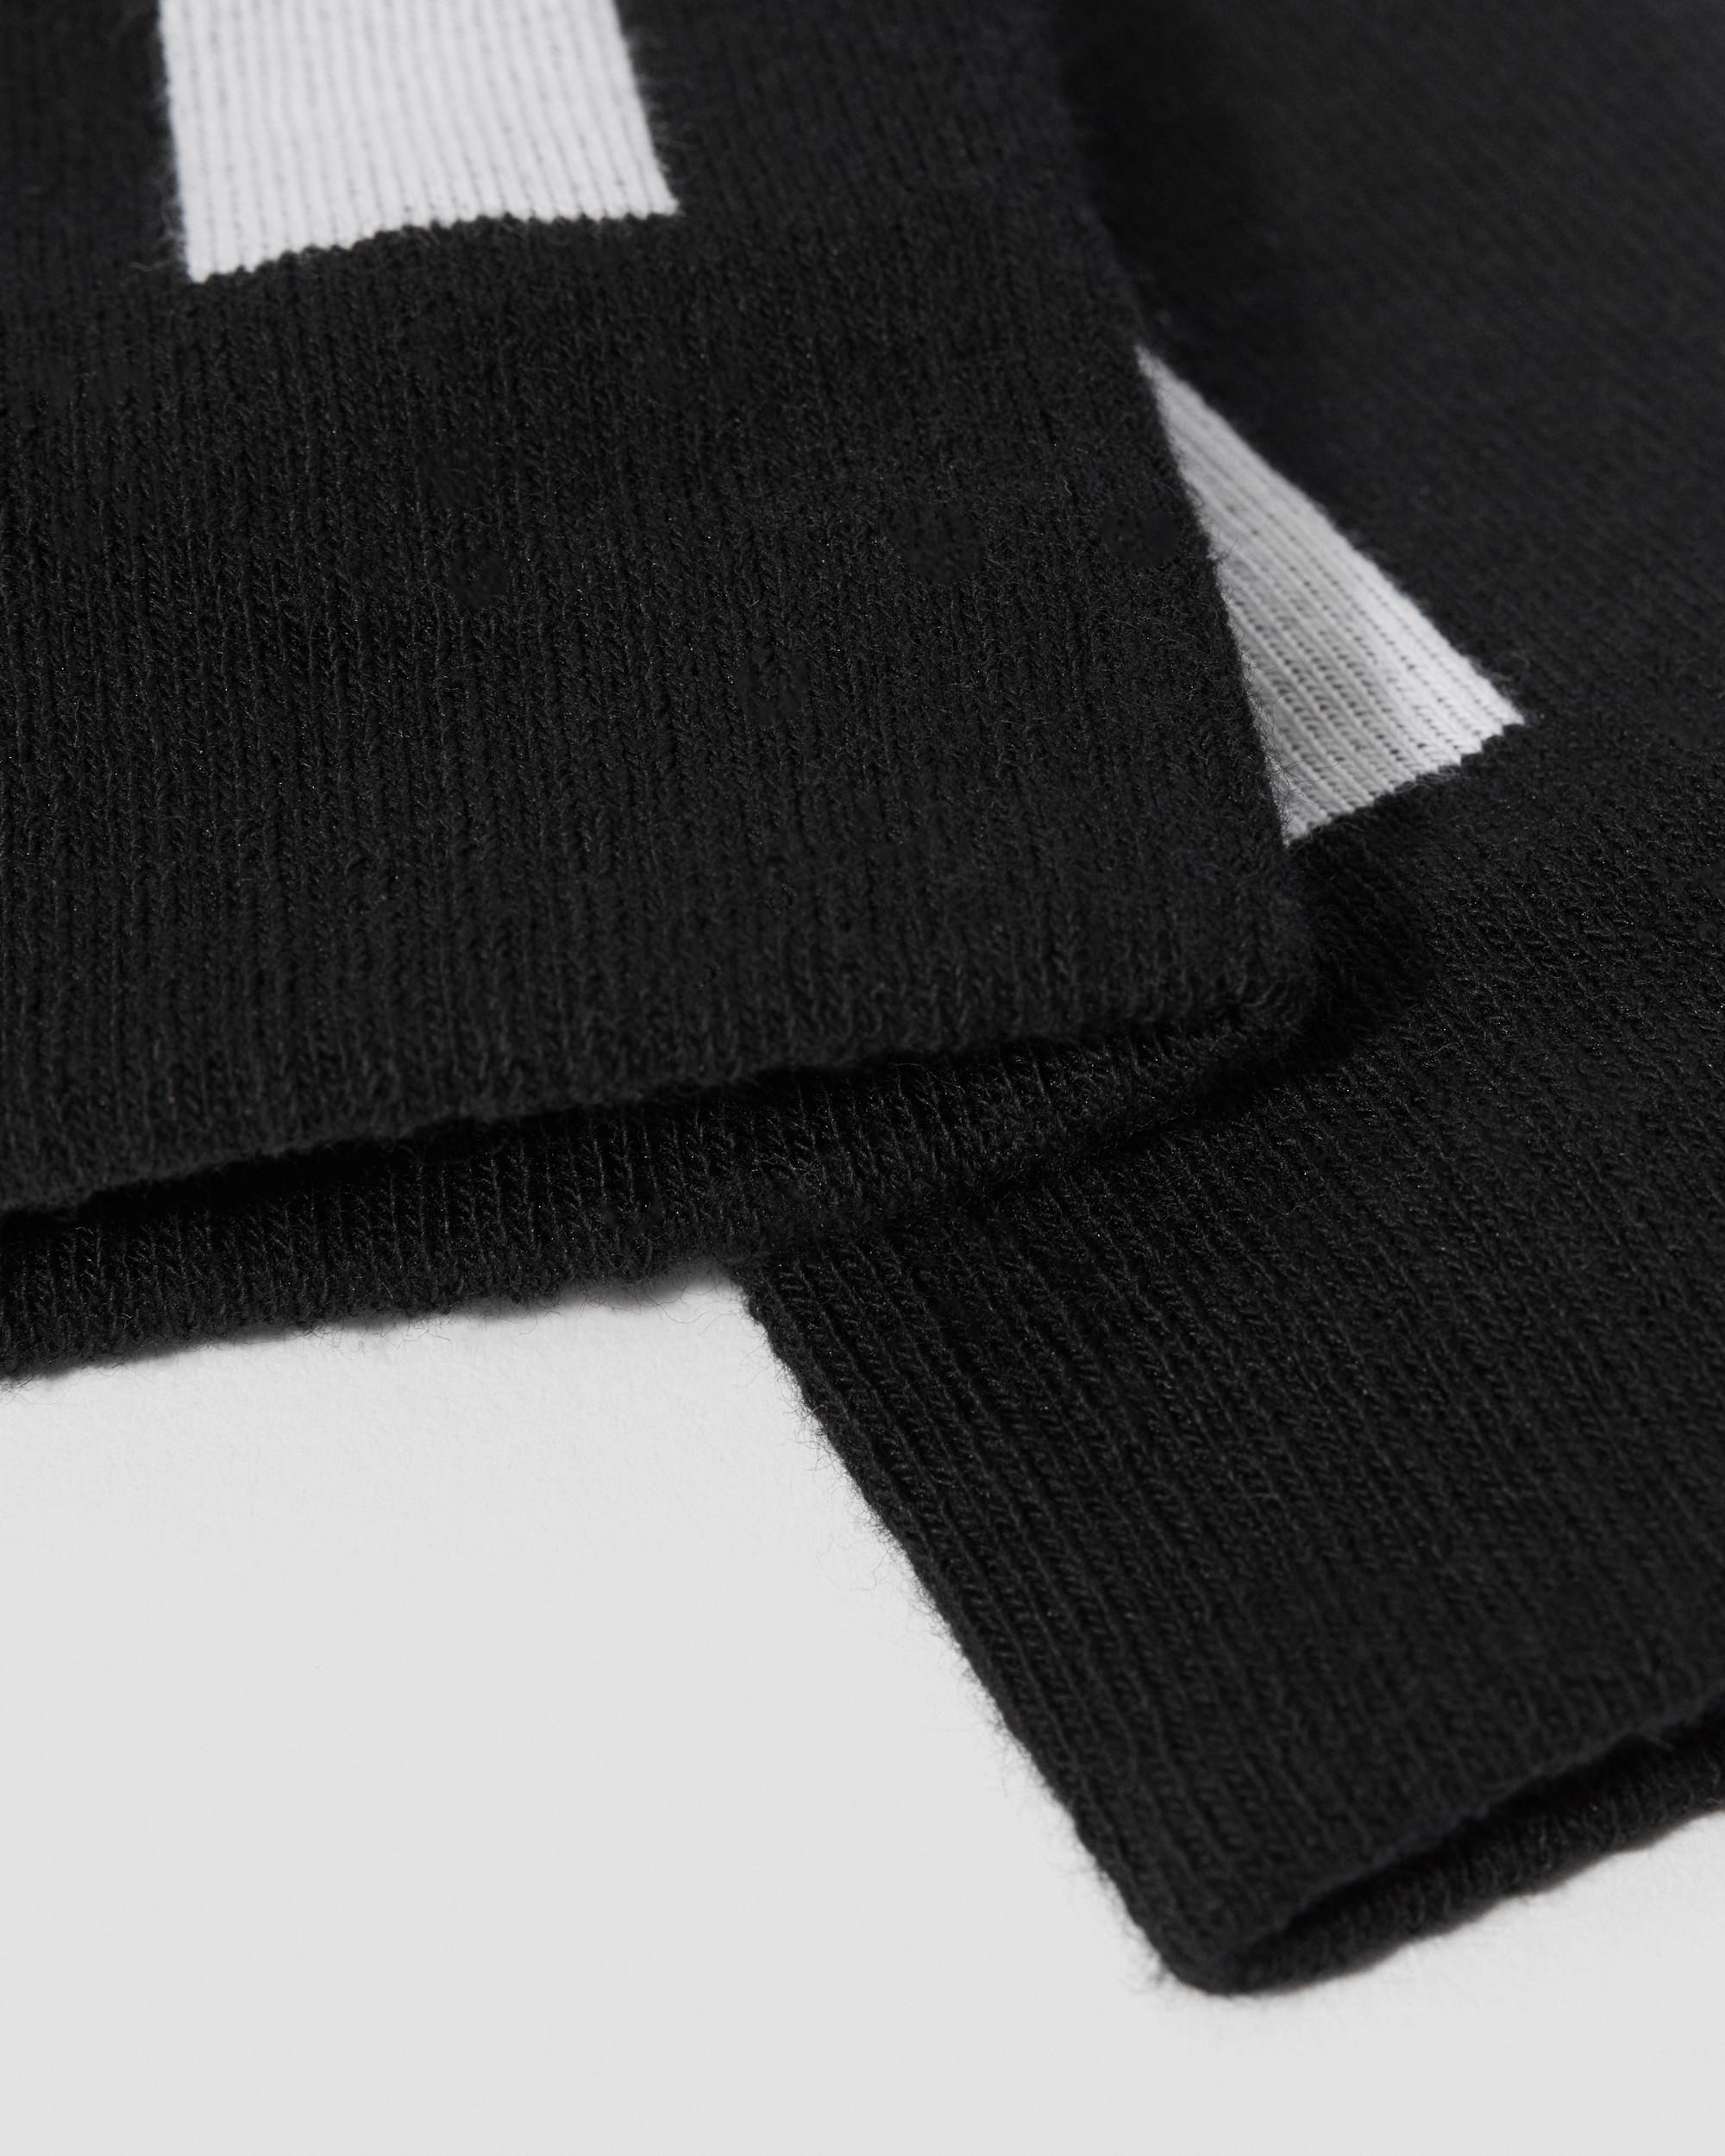 Double Doc Cotton Blend Socks in Black+White